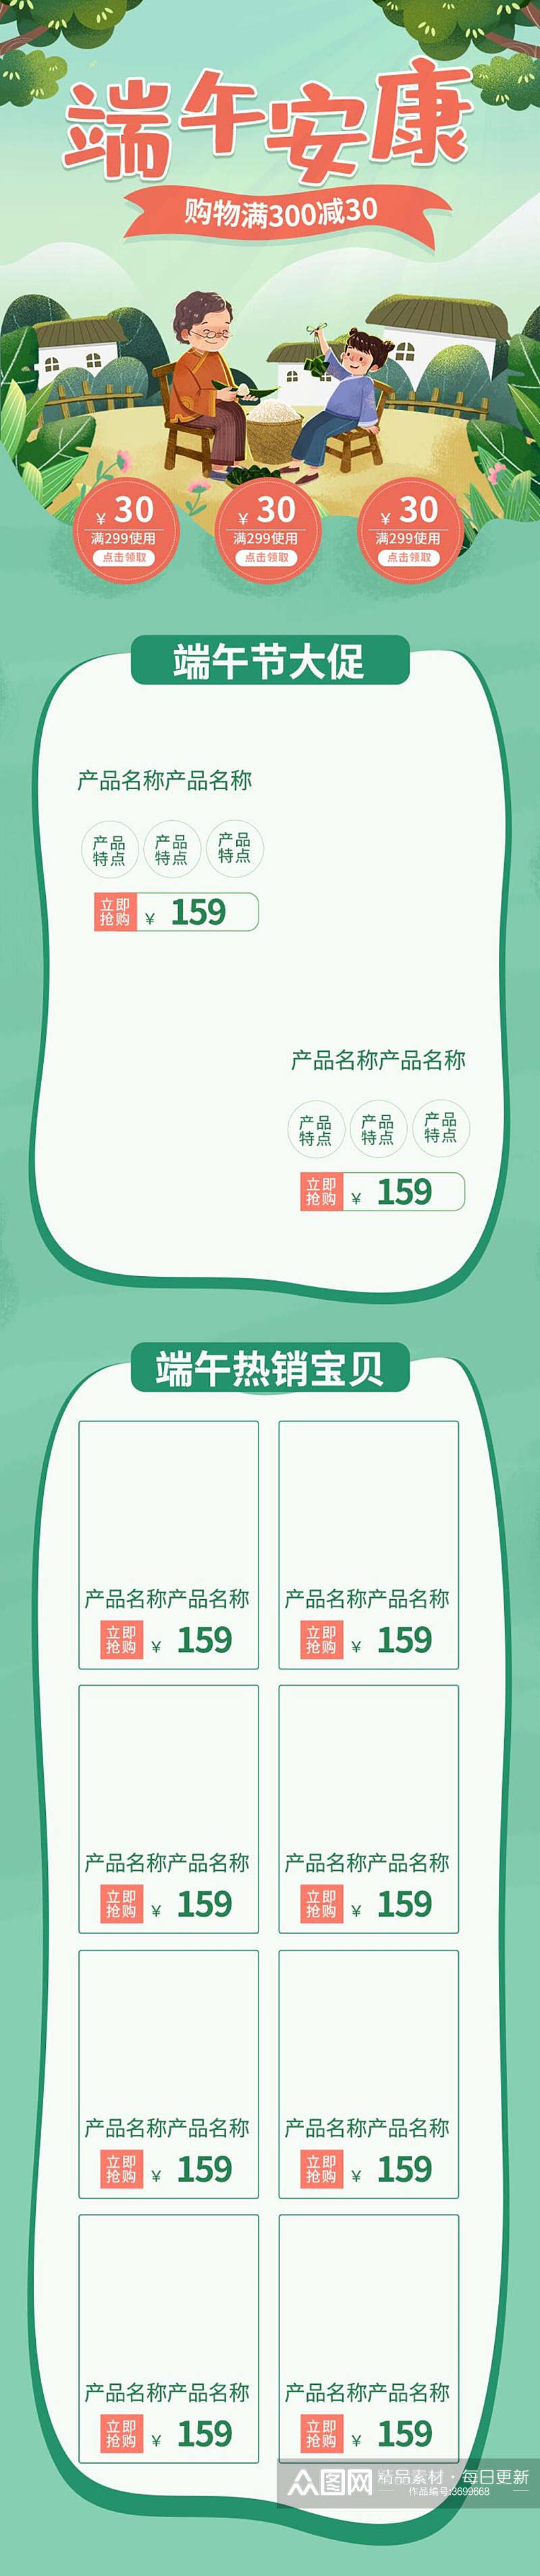 小清新包粽子端午节电商手机版首页素材